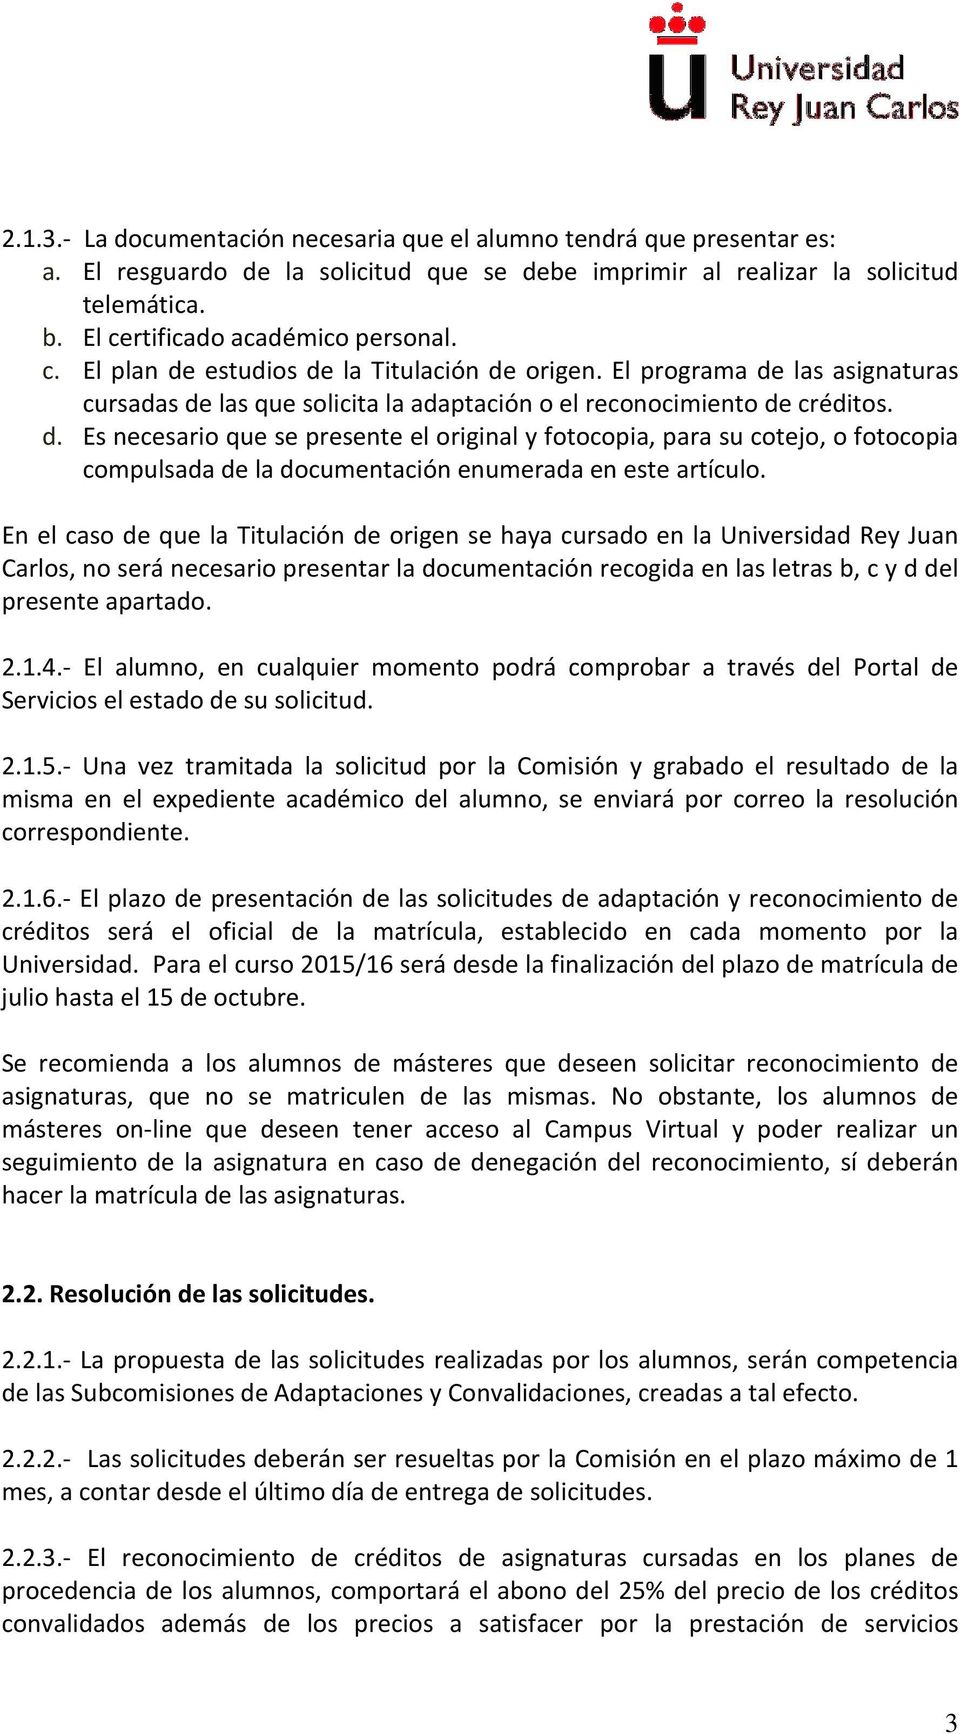 En el caso de que la Titulación de origen se haya cursado en la Universidad Rey Juan Carlos, no será necesario presentar la documentación recogida en las letras b, c y d del presente apartado. 2.1.4.